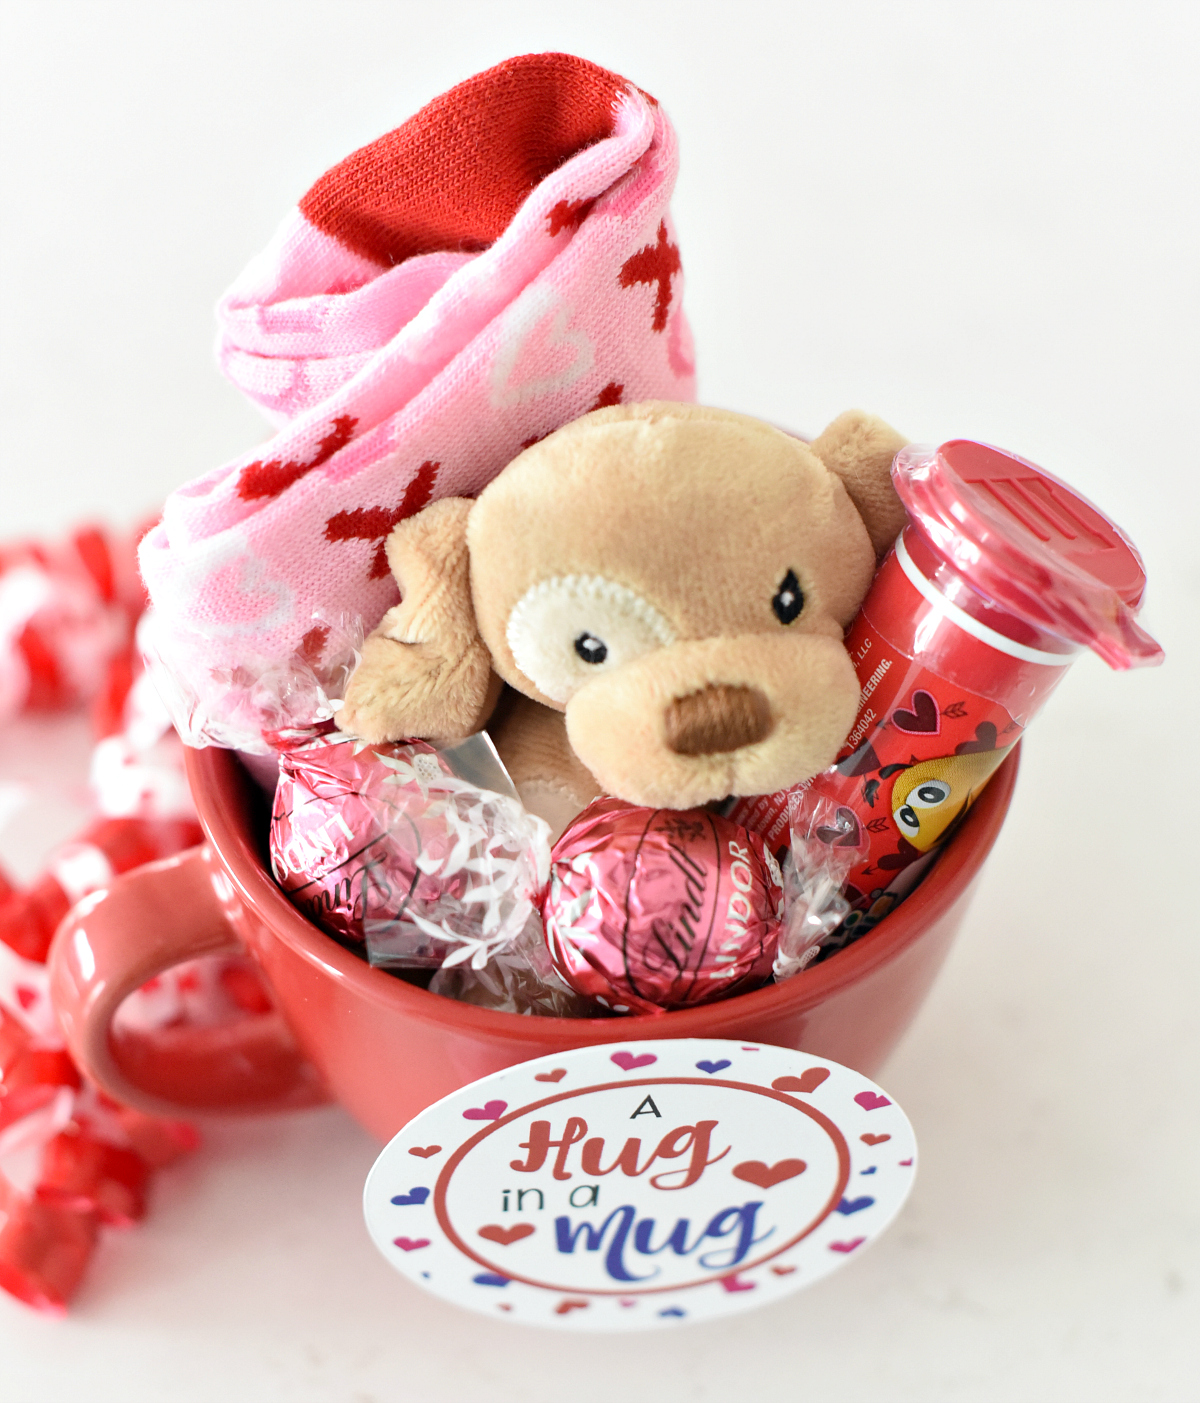 fun-valentines-gift-idea-for-kids-fun-squared